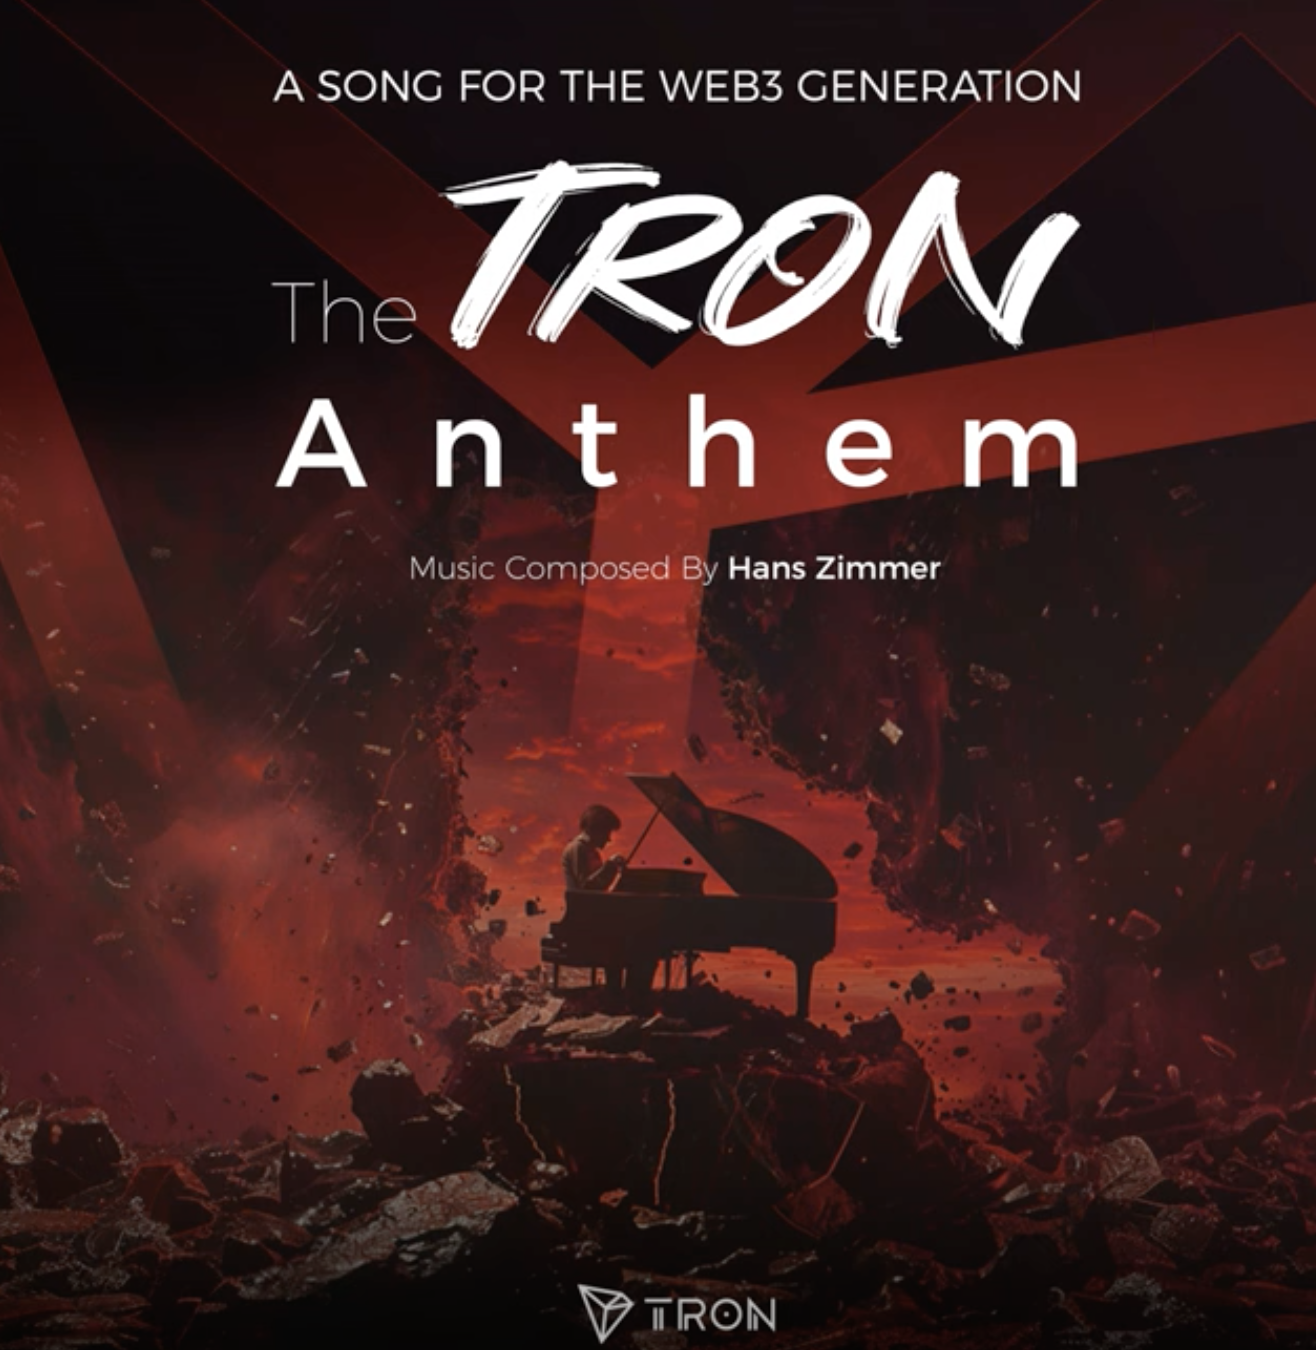 Del Cine a la Web 3: Hans Zimmer compone Himno de Tron